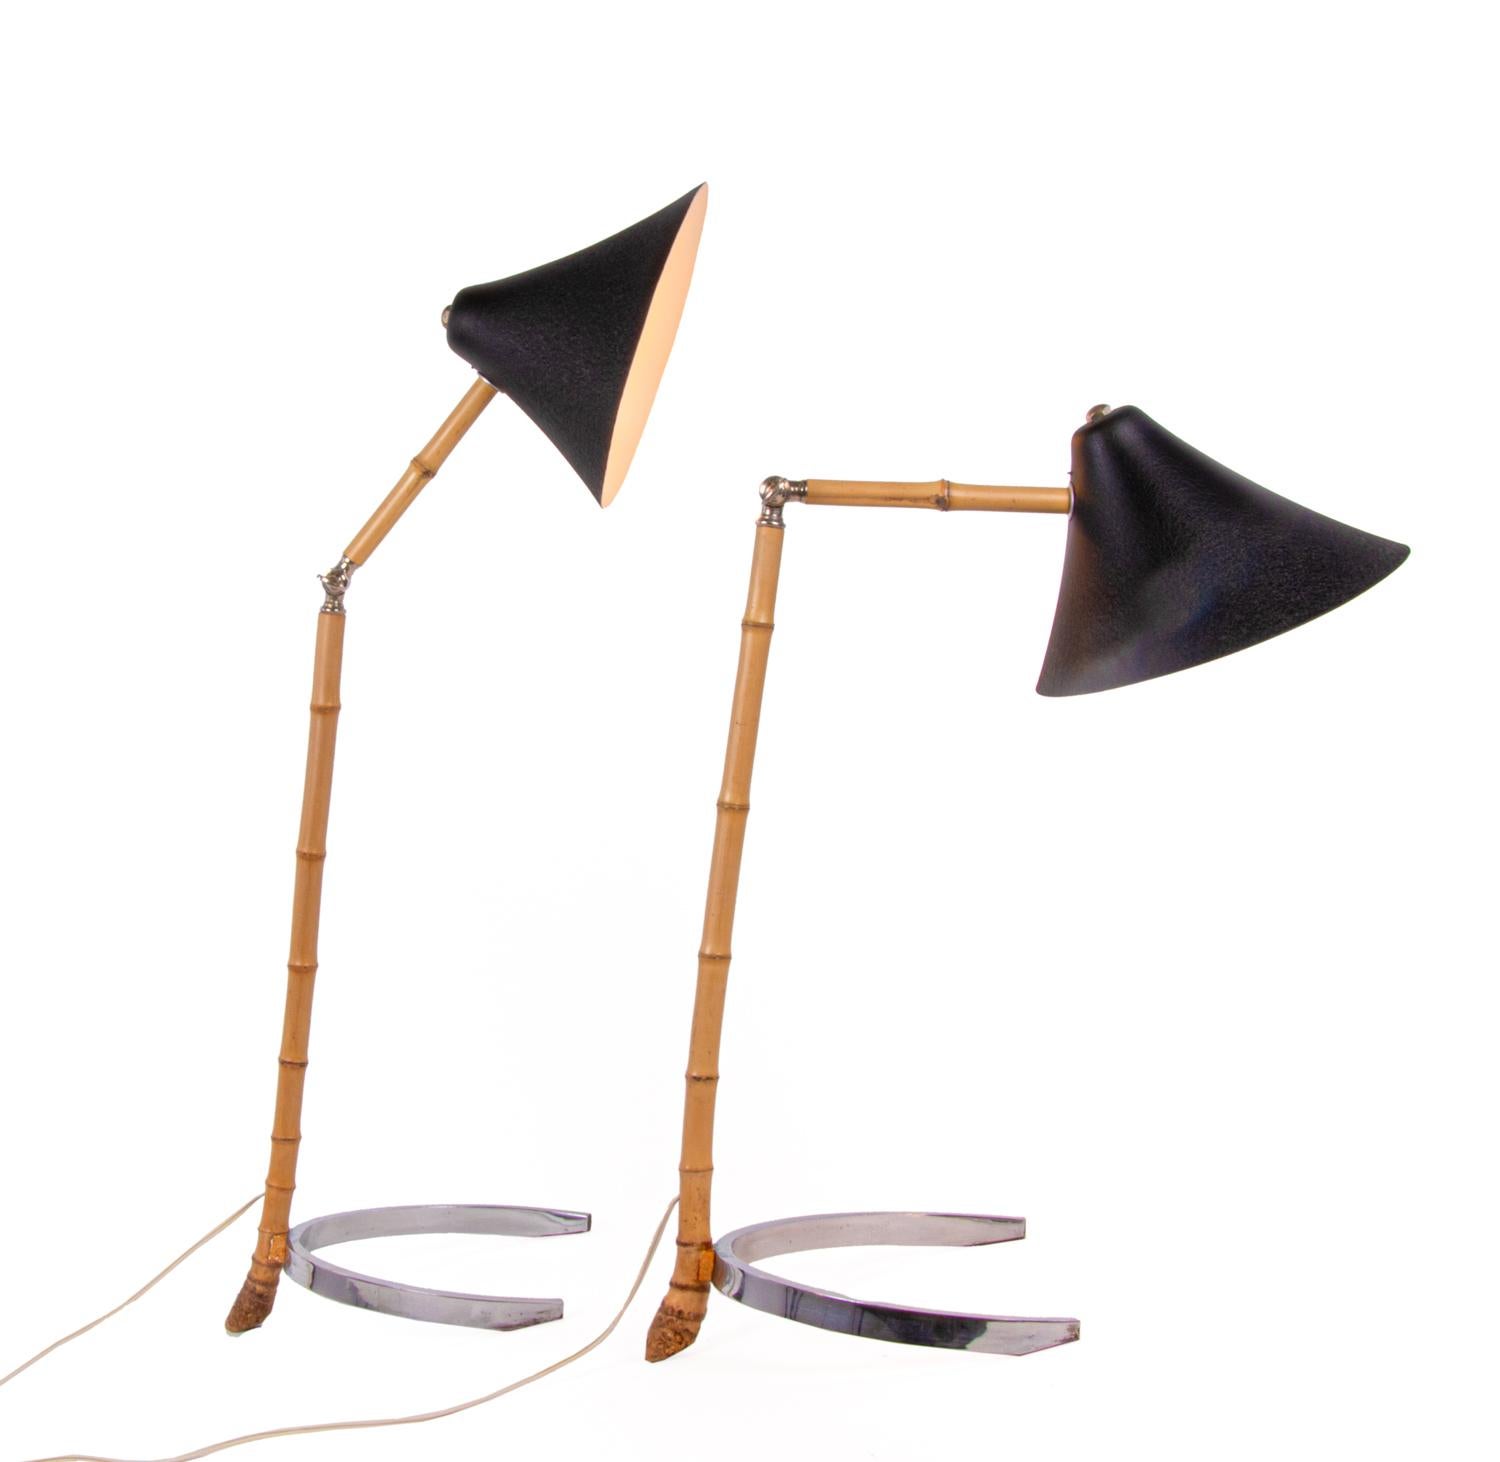 Ikonisches Paar von Tischlampen aus der Mitte des Jahrhunderts, wahrscheinlich aus den Werkstätten von Carl Auböck, J. T. Kalmar oder Rupert Nikoll in Wien, Österreich. 

Die Lampen bestehen aus gelenkigen Bambusstäben, haben verchromte Hufeisenfüße